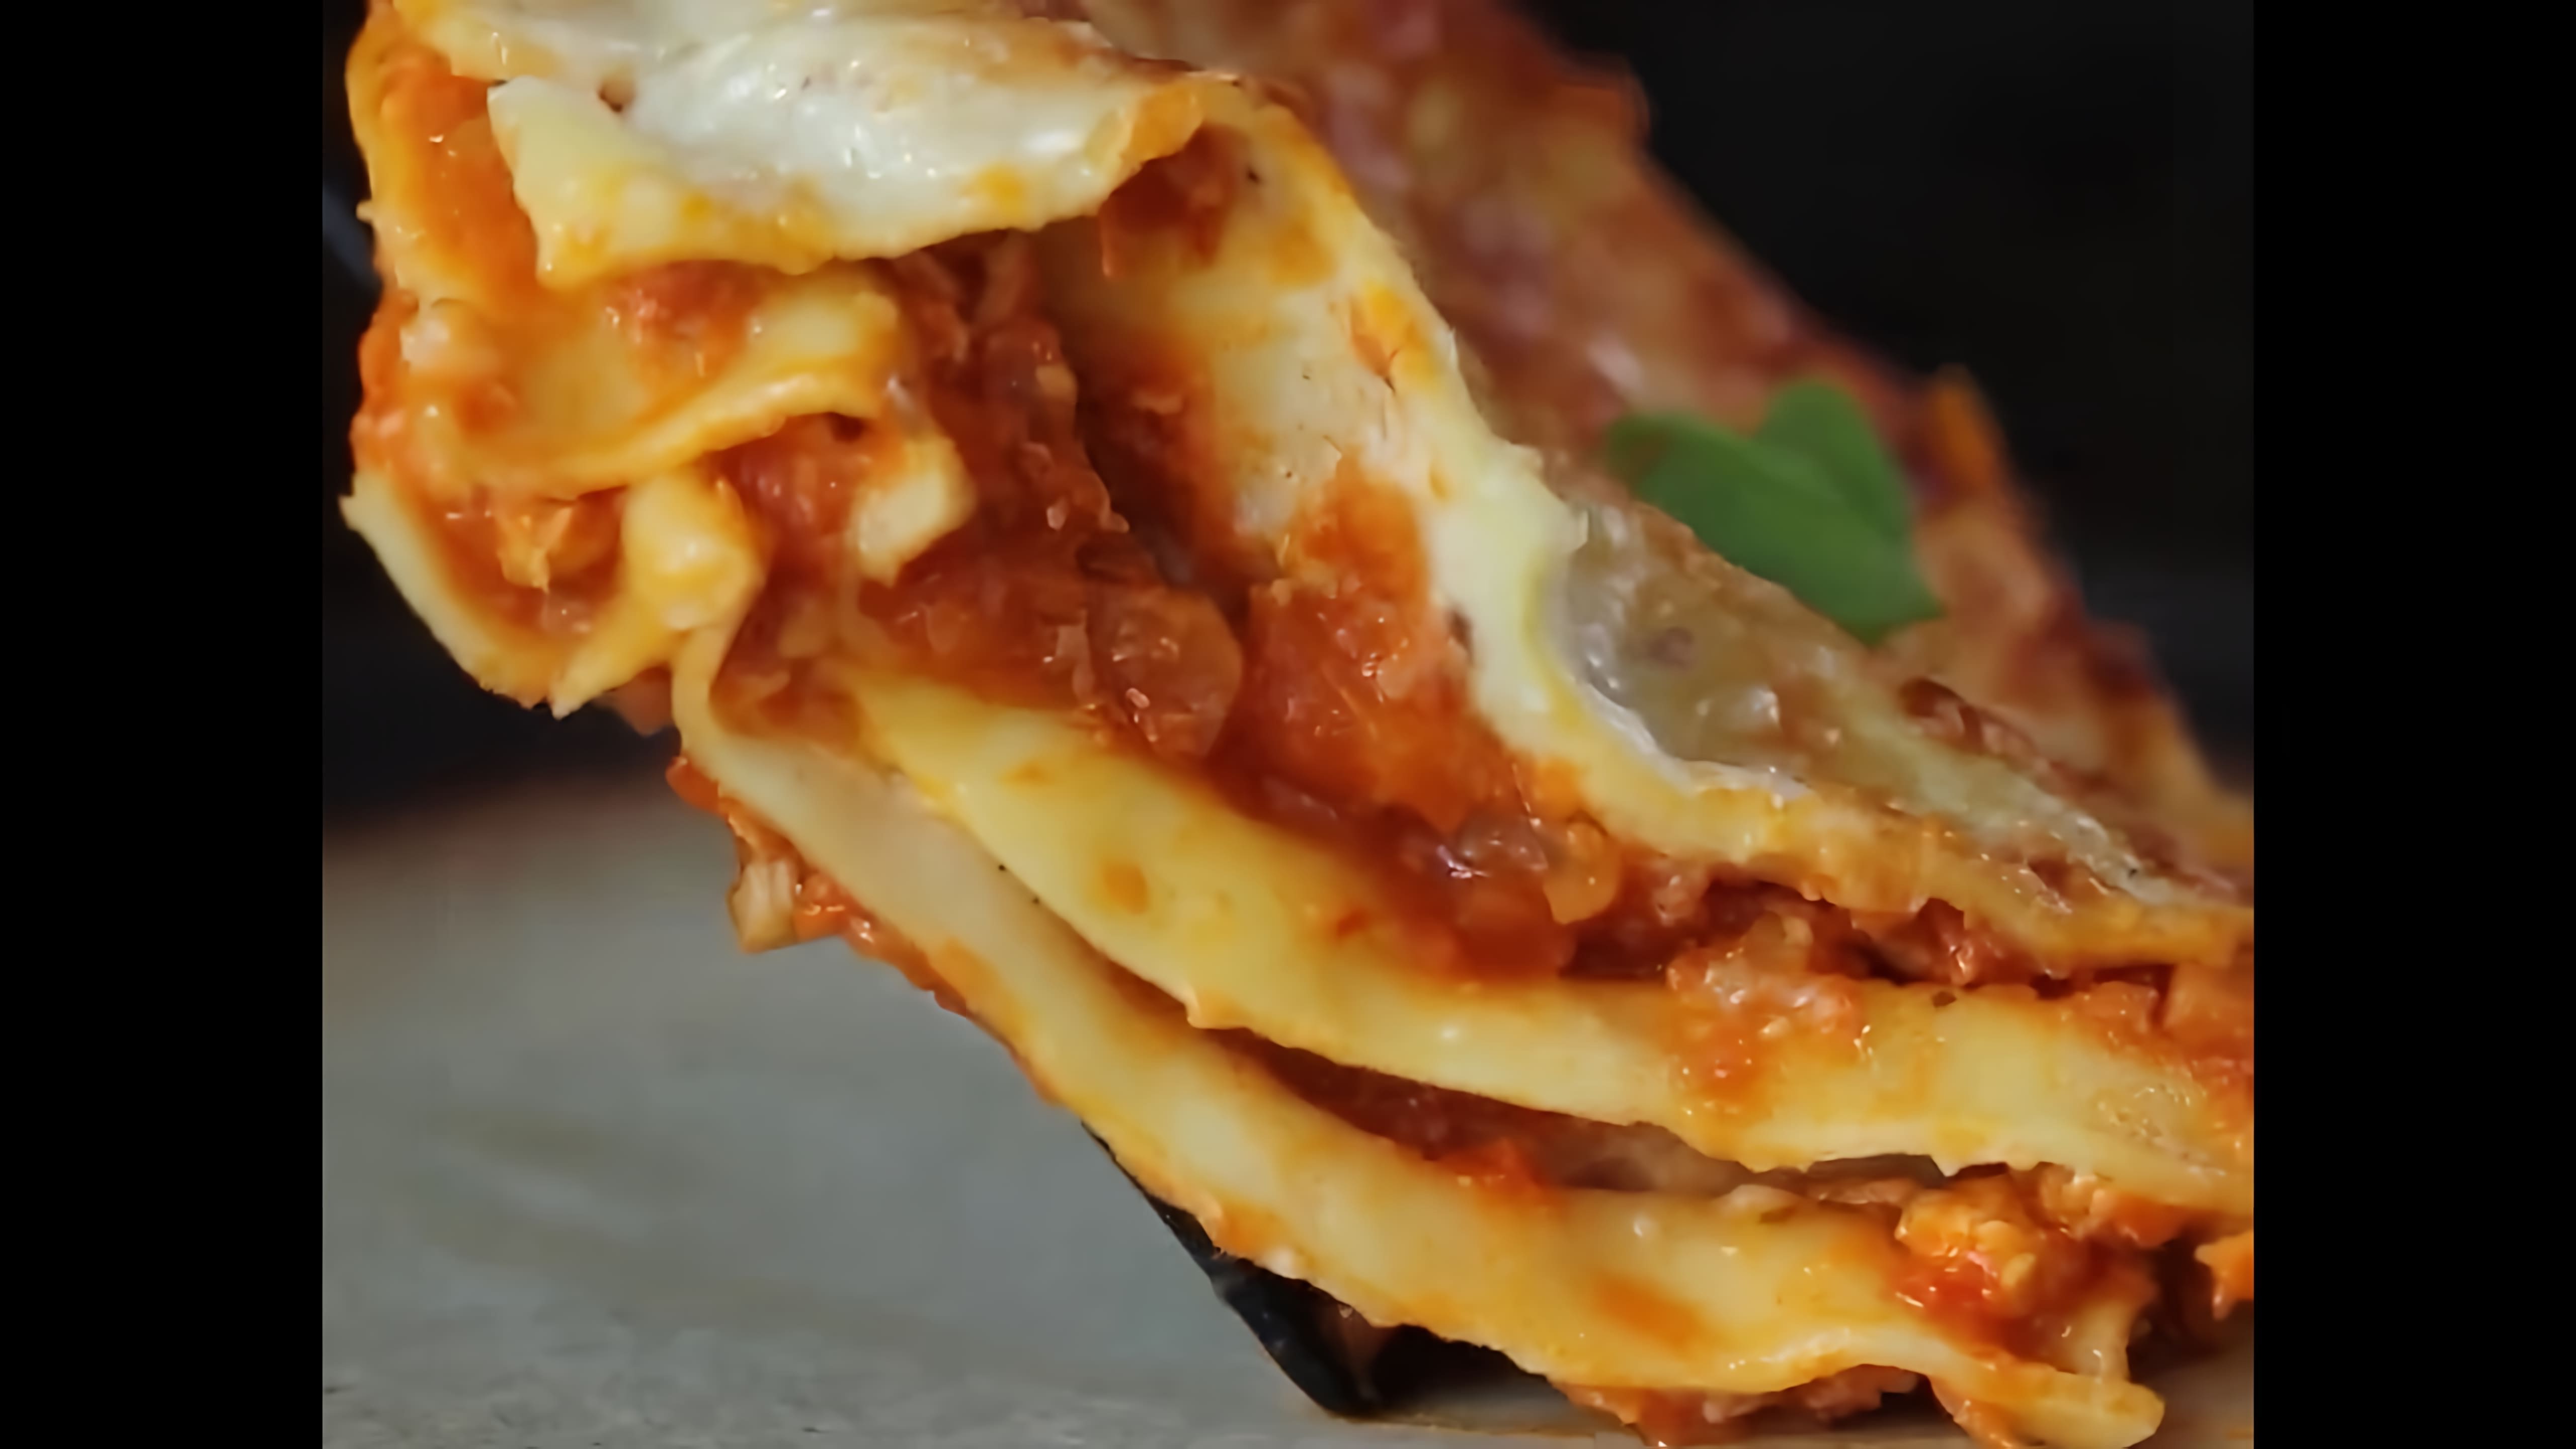 Видео-ролик с заголовком "Куриная лазанья | Chicken Lasagna" представляет собой рецепт приготовления блюда, которое сочетает в себе слои теста, соуса и куриного мяса